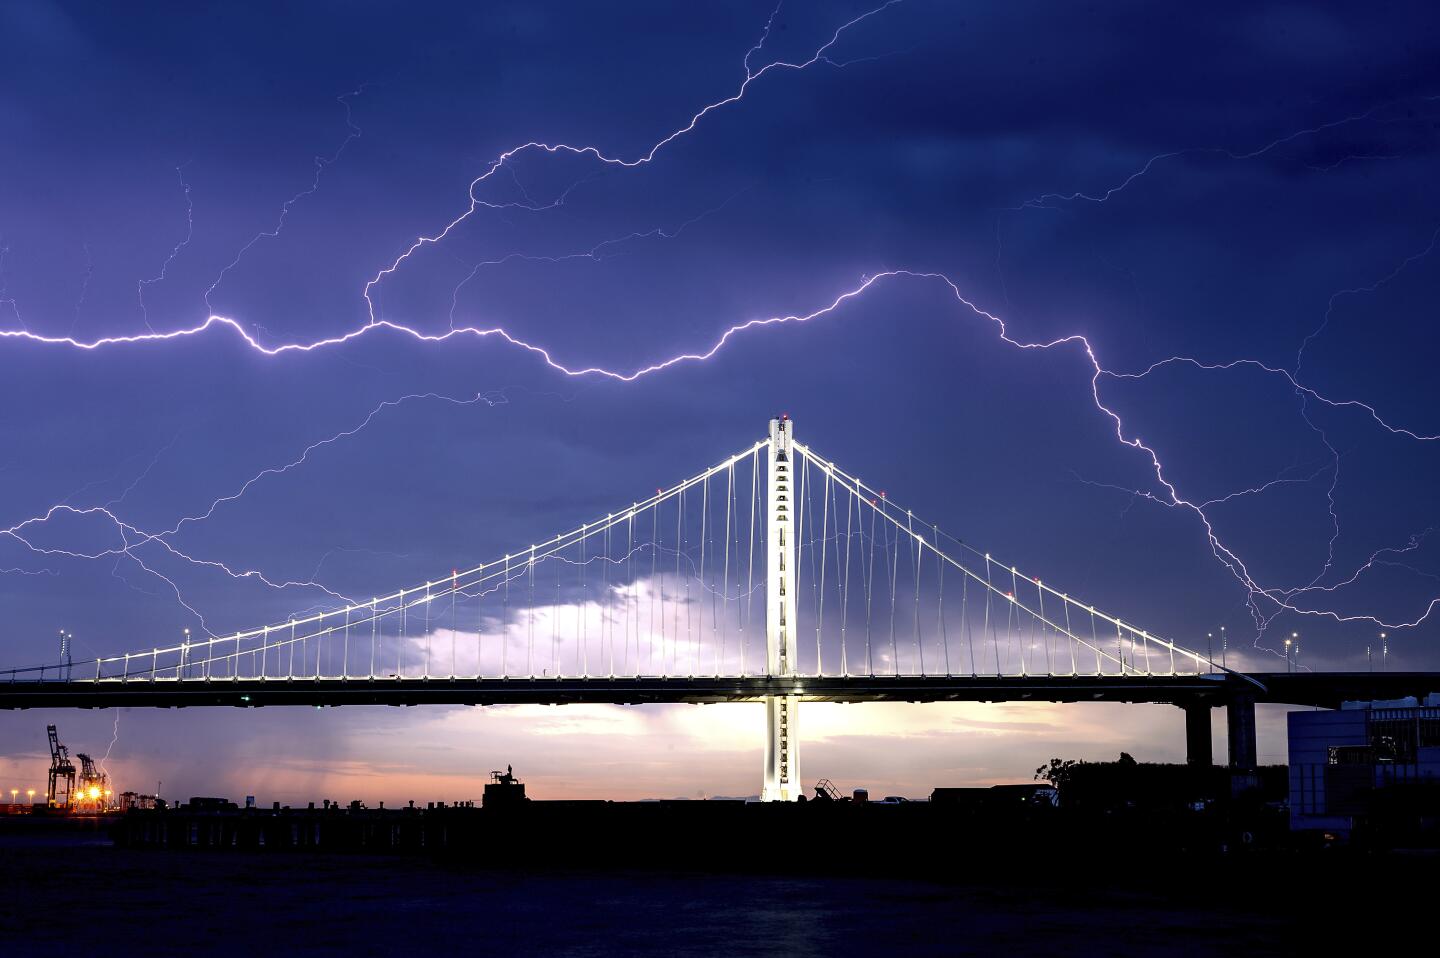 Lightning forks over the San Francisco-Oakland Bay Bridge.